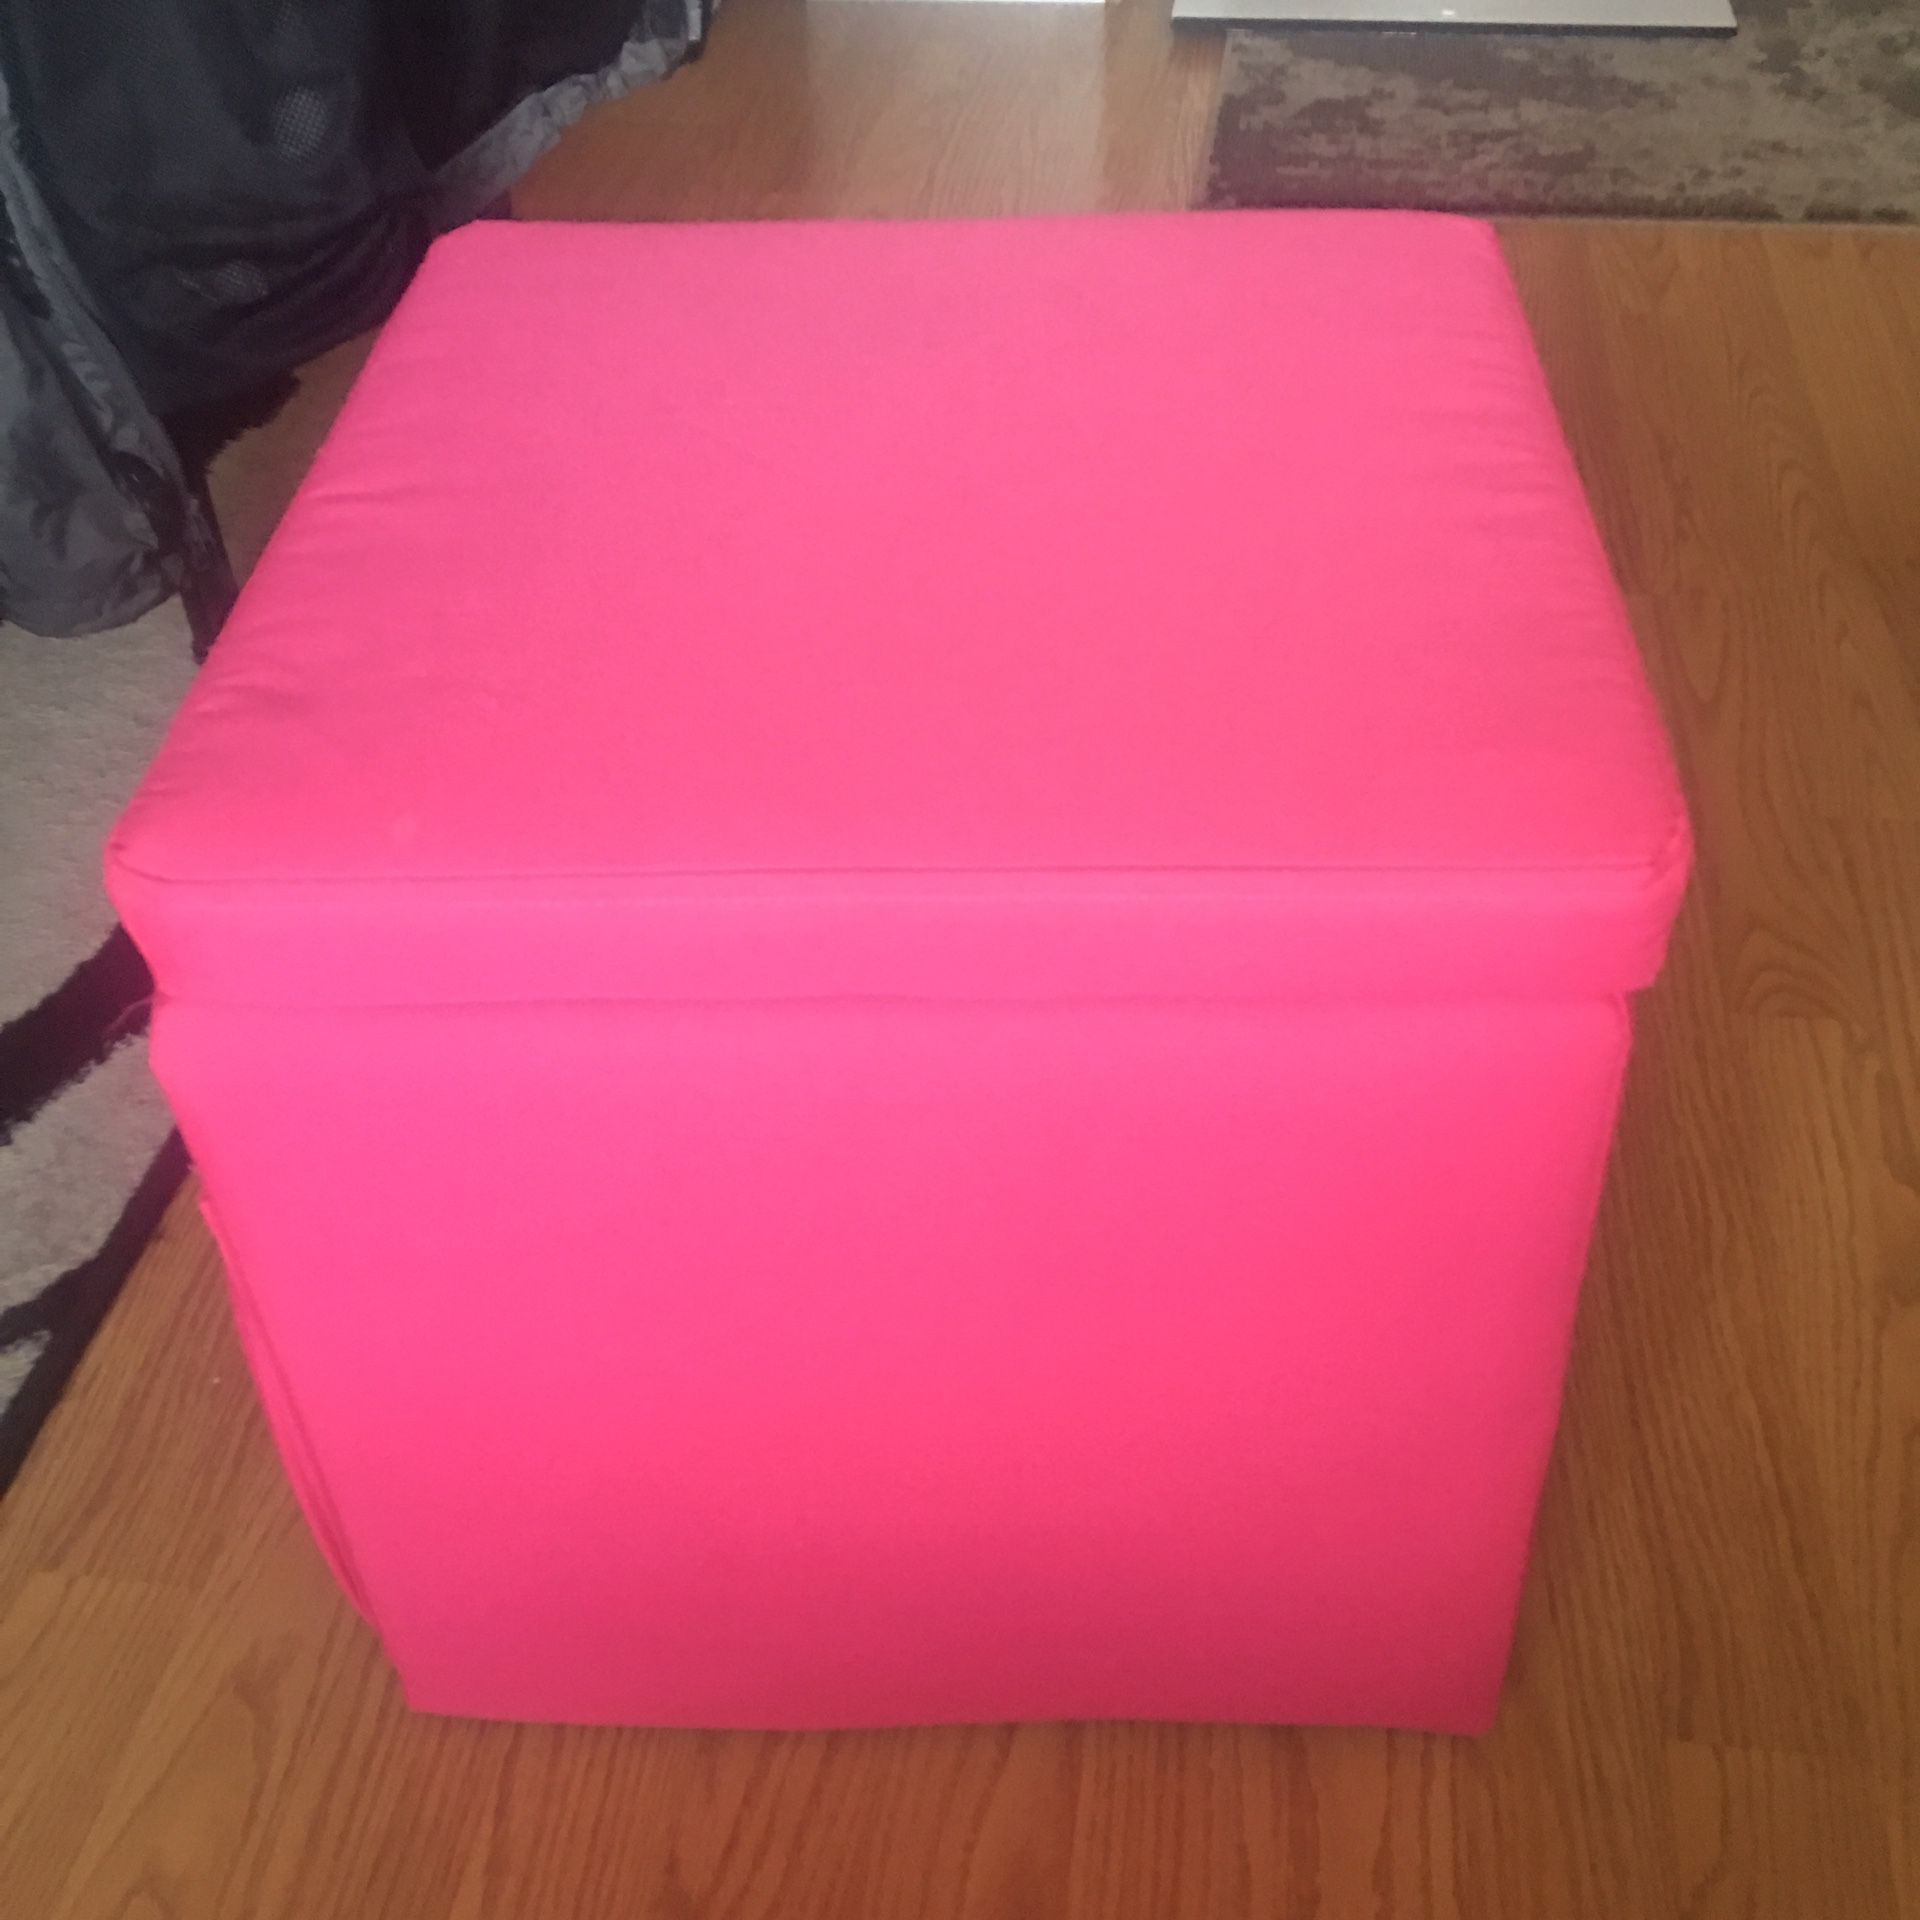 Pink storage ottoman